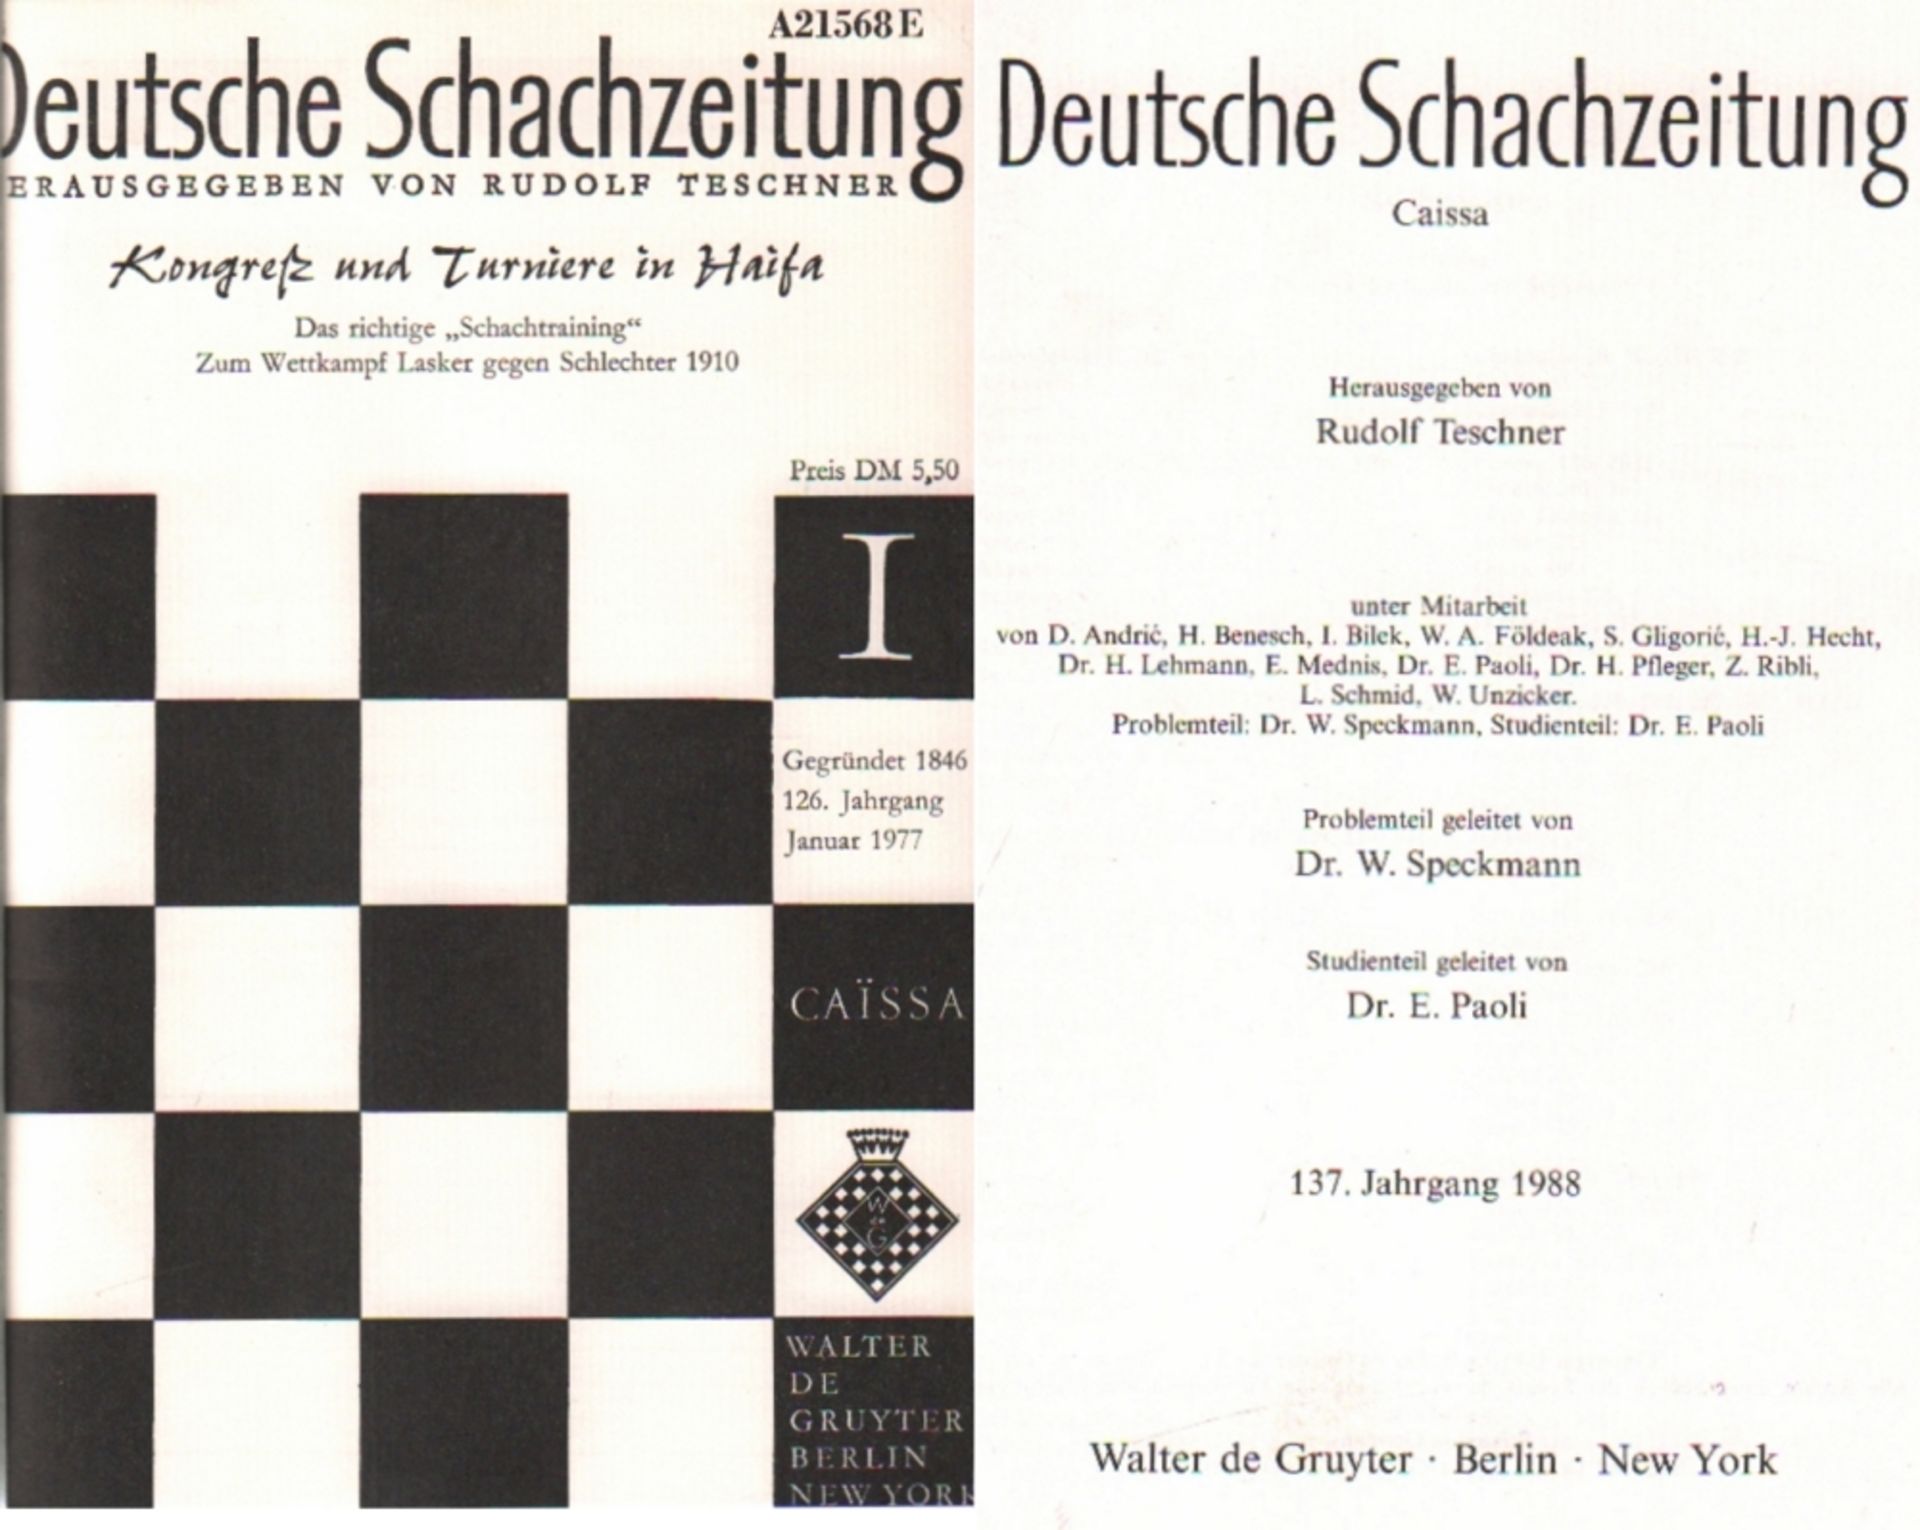 Deutsche Schachzeitung. Caissa. Hrsg. von Rudolf Teschner. 12 Bände. Berlin, de Gruyter, 1977 -